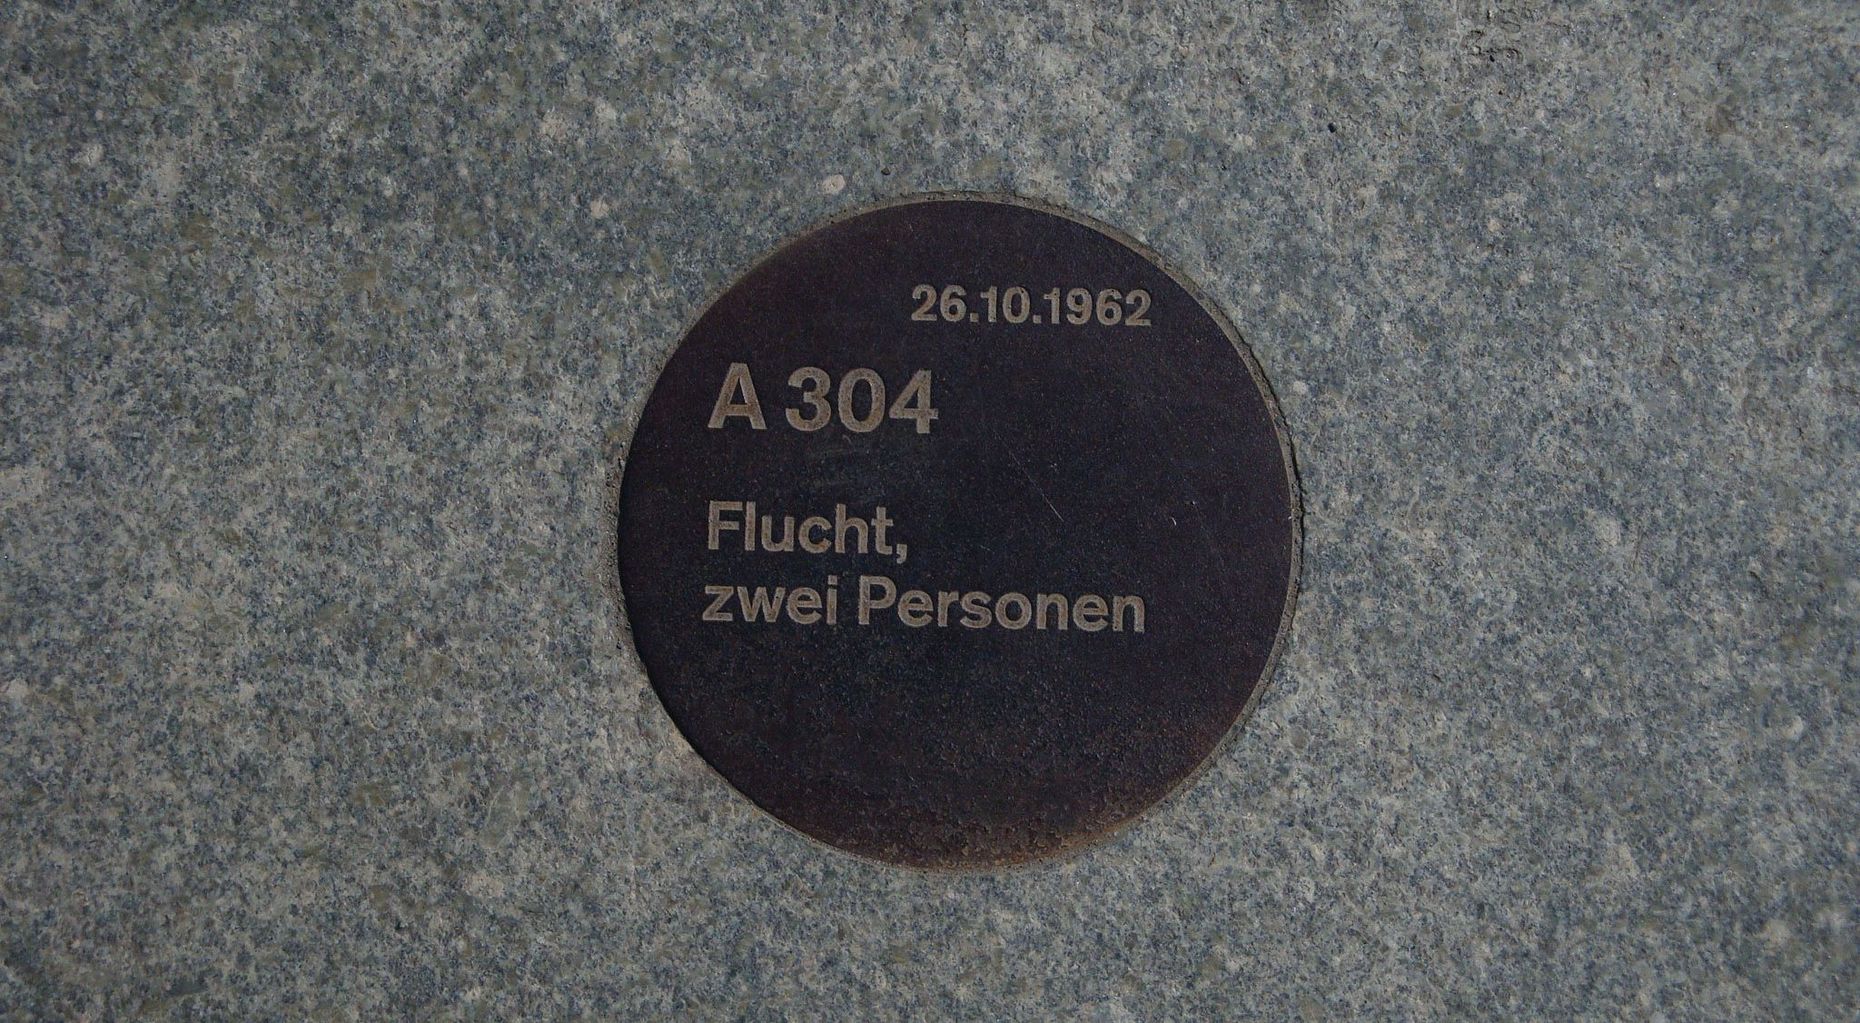 Das Bild zeigt eine runde in Stein eingelassene Tafel auf dieser steht: 26.10.1961, A 304, Flucht, zwei Personen